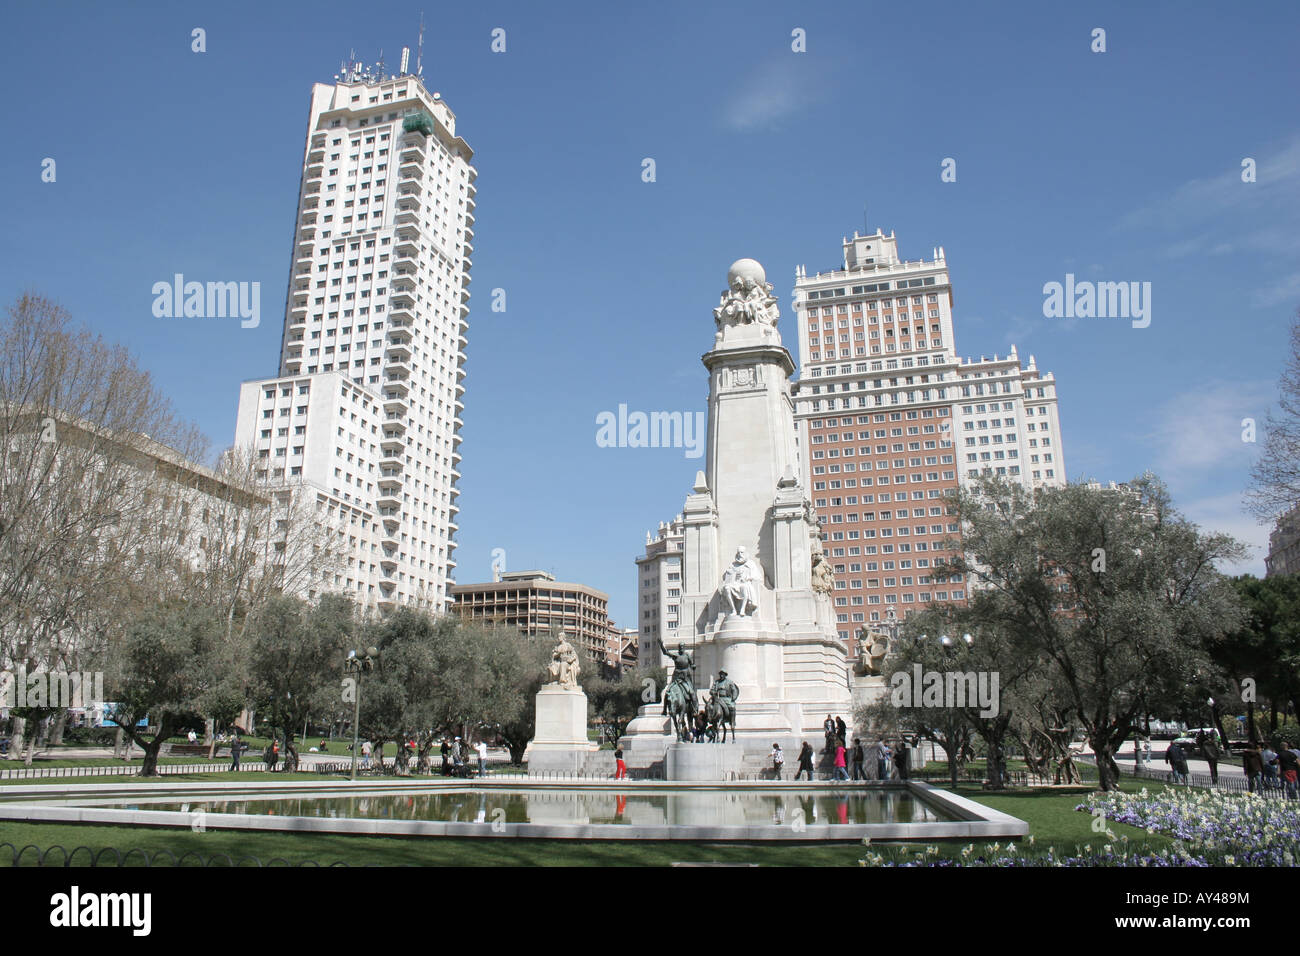 Plaza de Espana with statues of Don Quixote & Sancho Panza in Madrid Spain with the Edificio Espana building in the background. Stock Photo